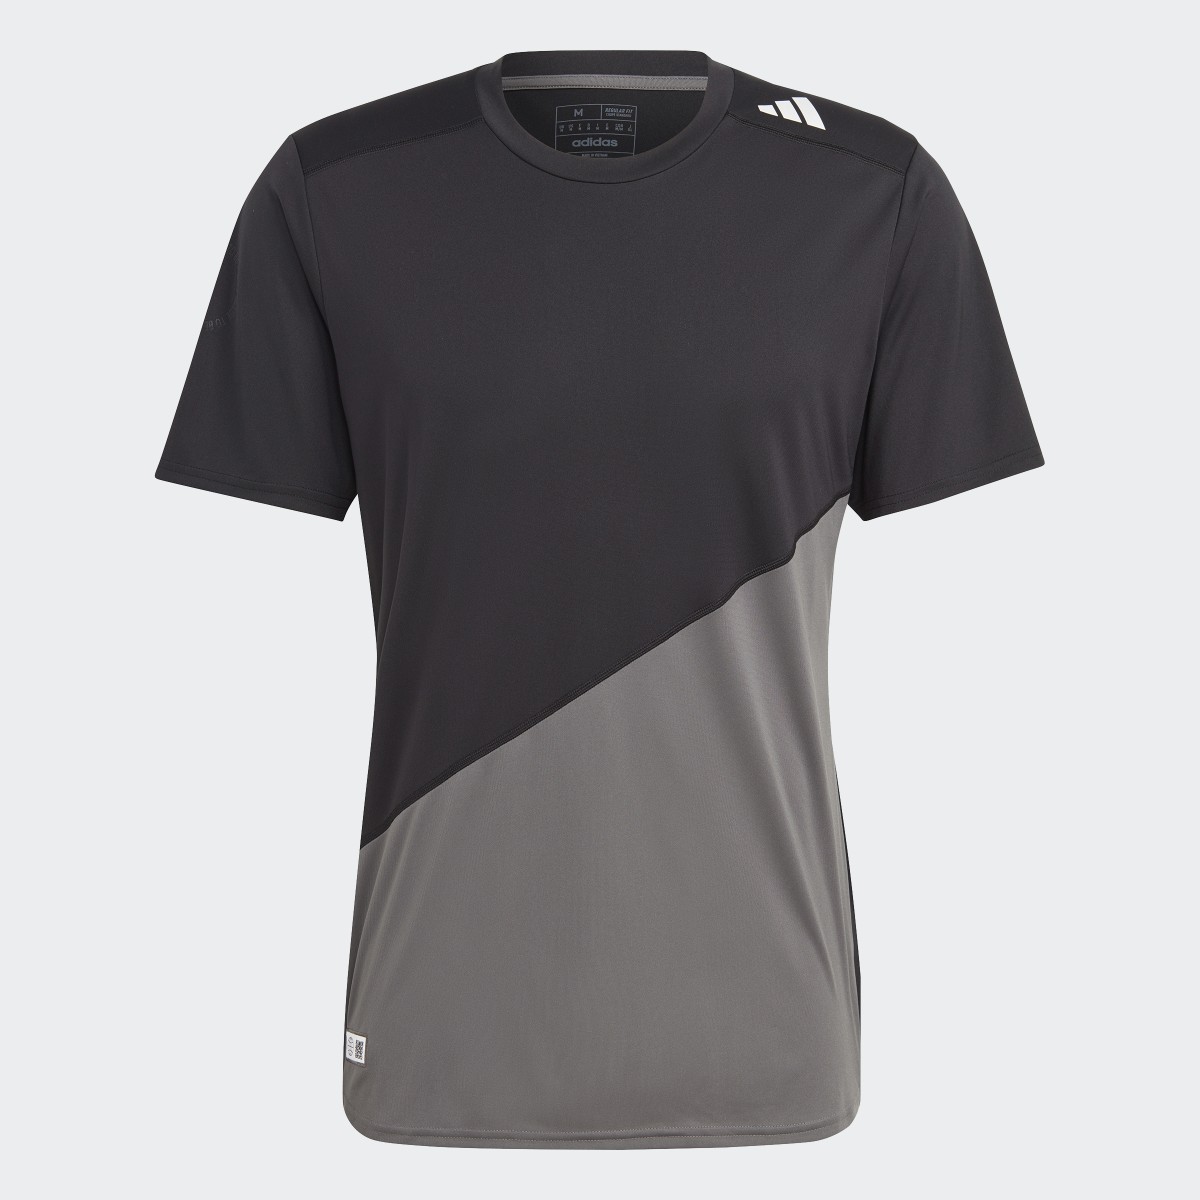 Adidas T-shirt de running Made to be Remade. 5